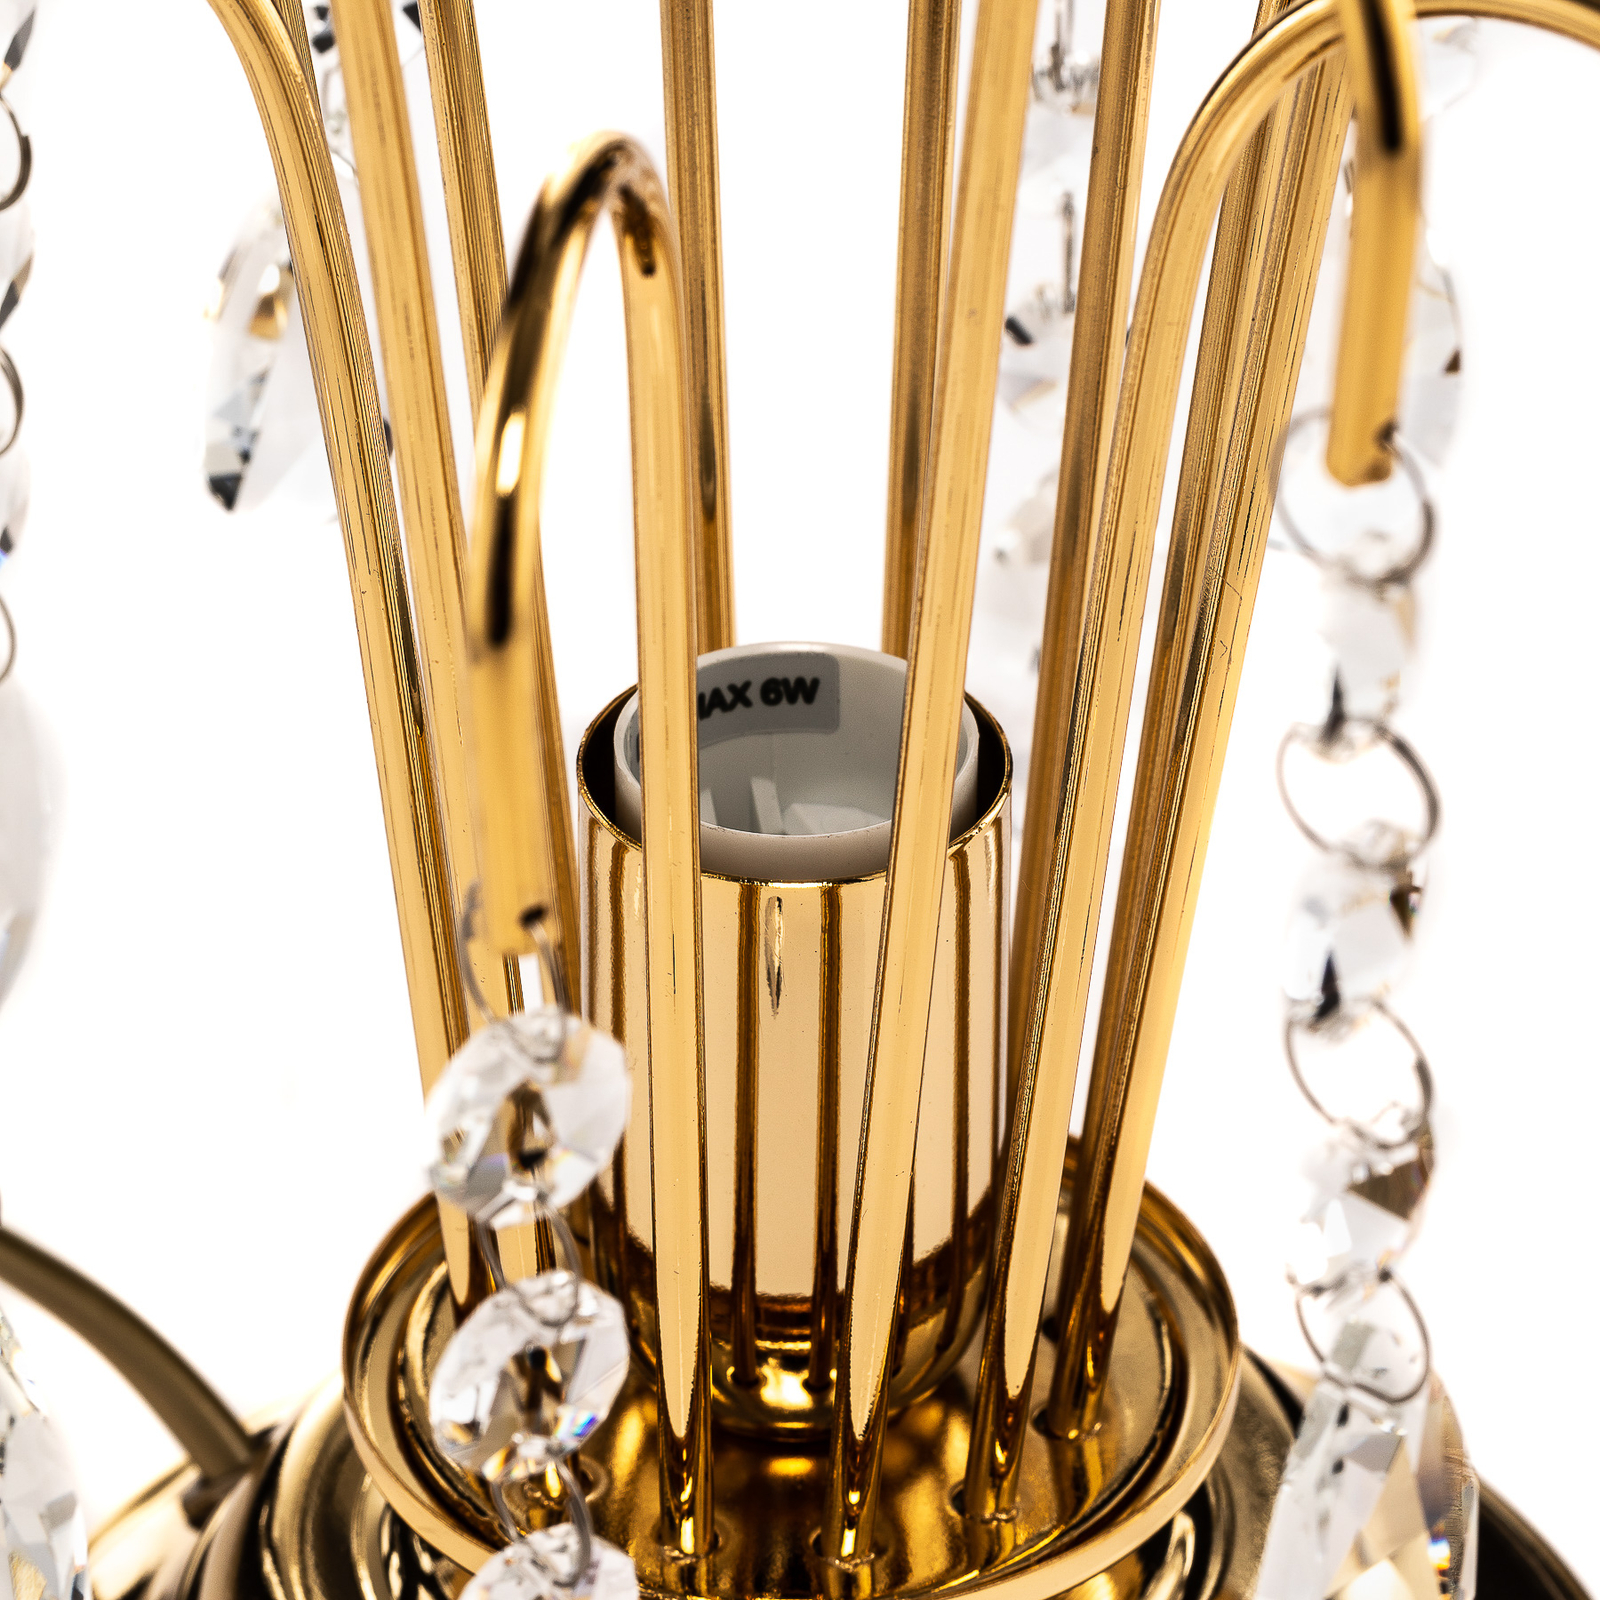 Stolní lampa Pioggia s křišťály, 26 cm, zlatá